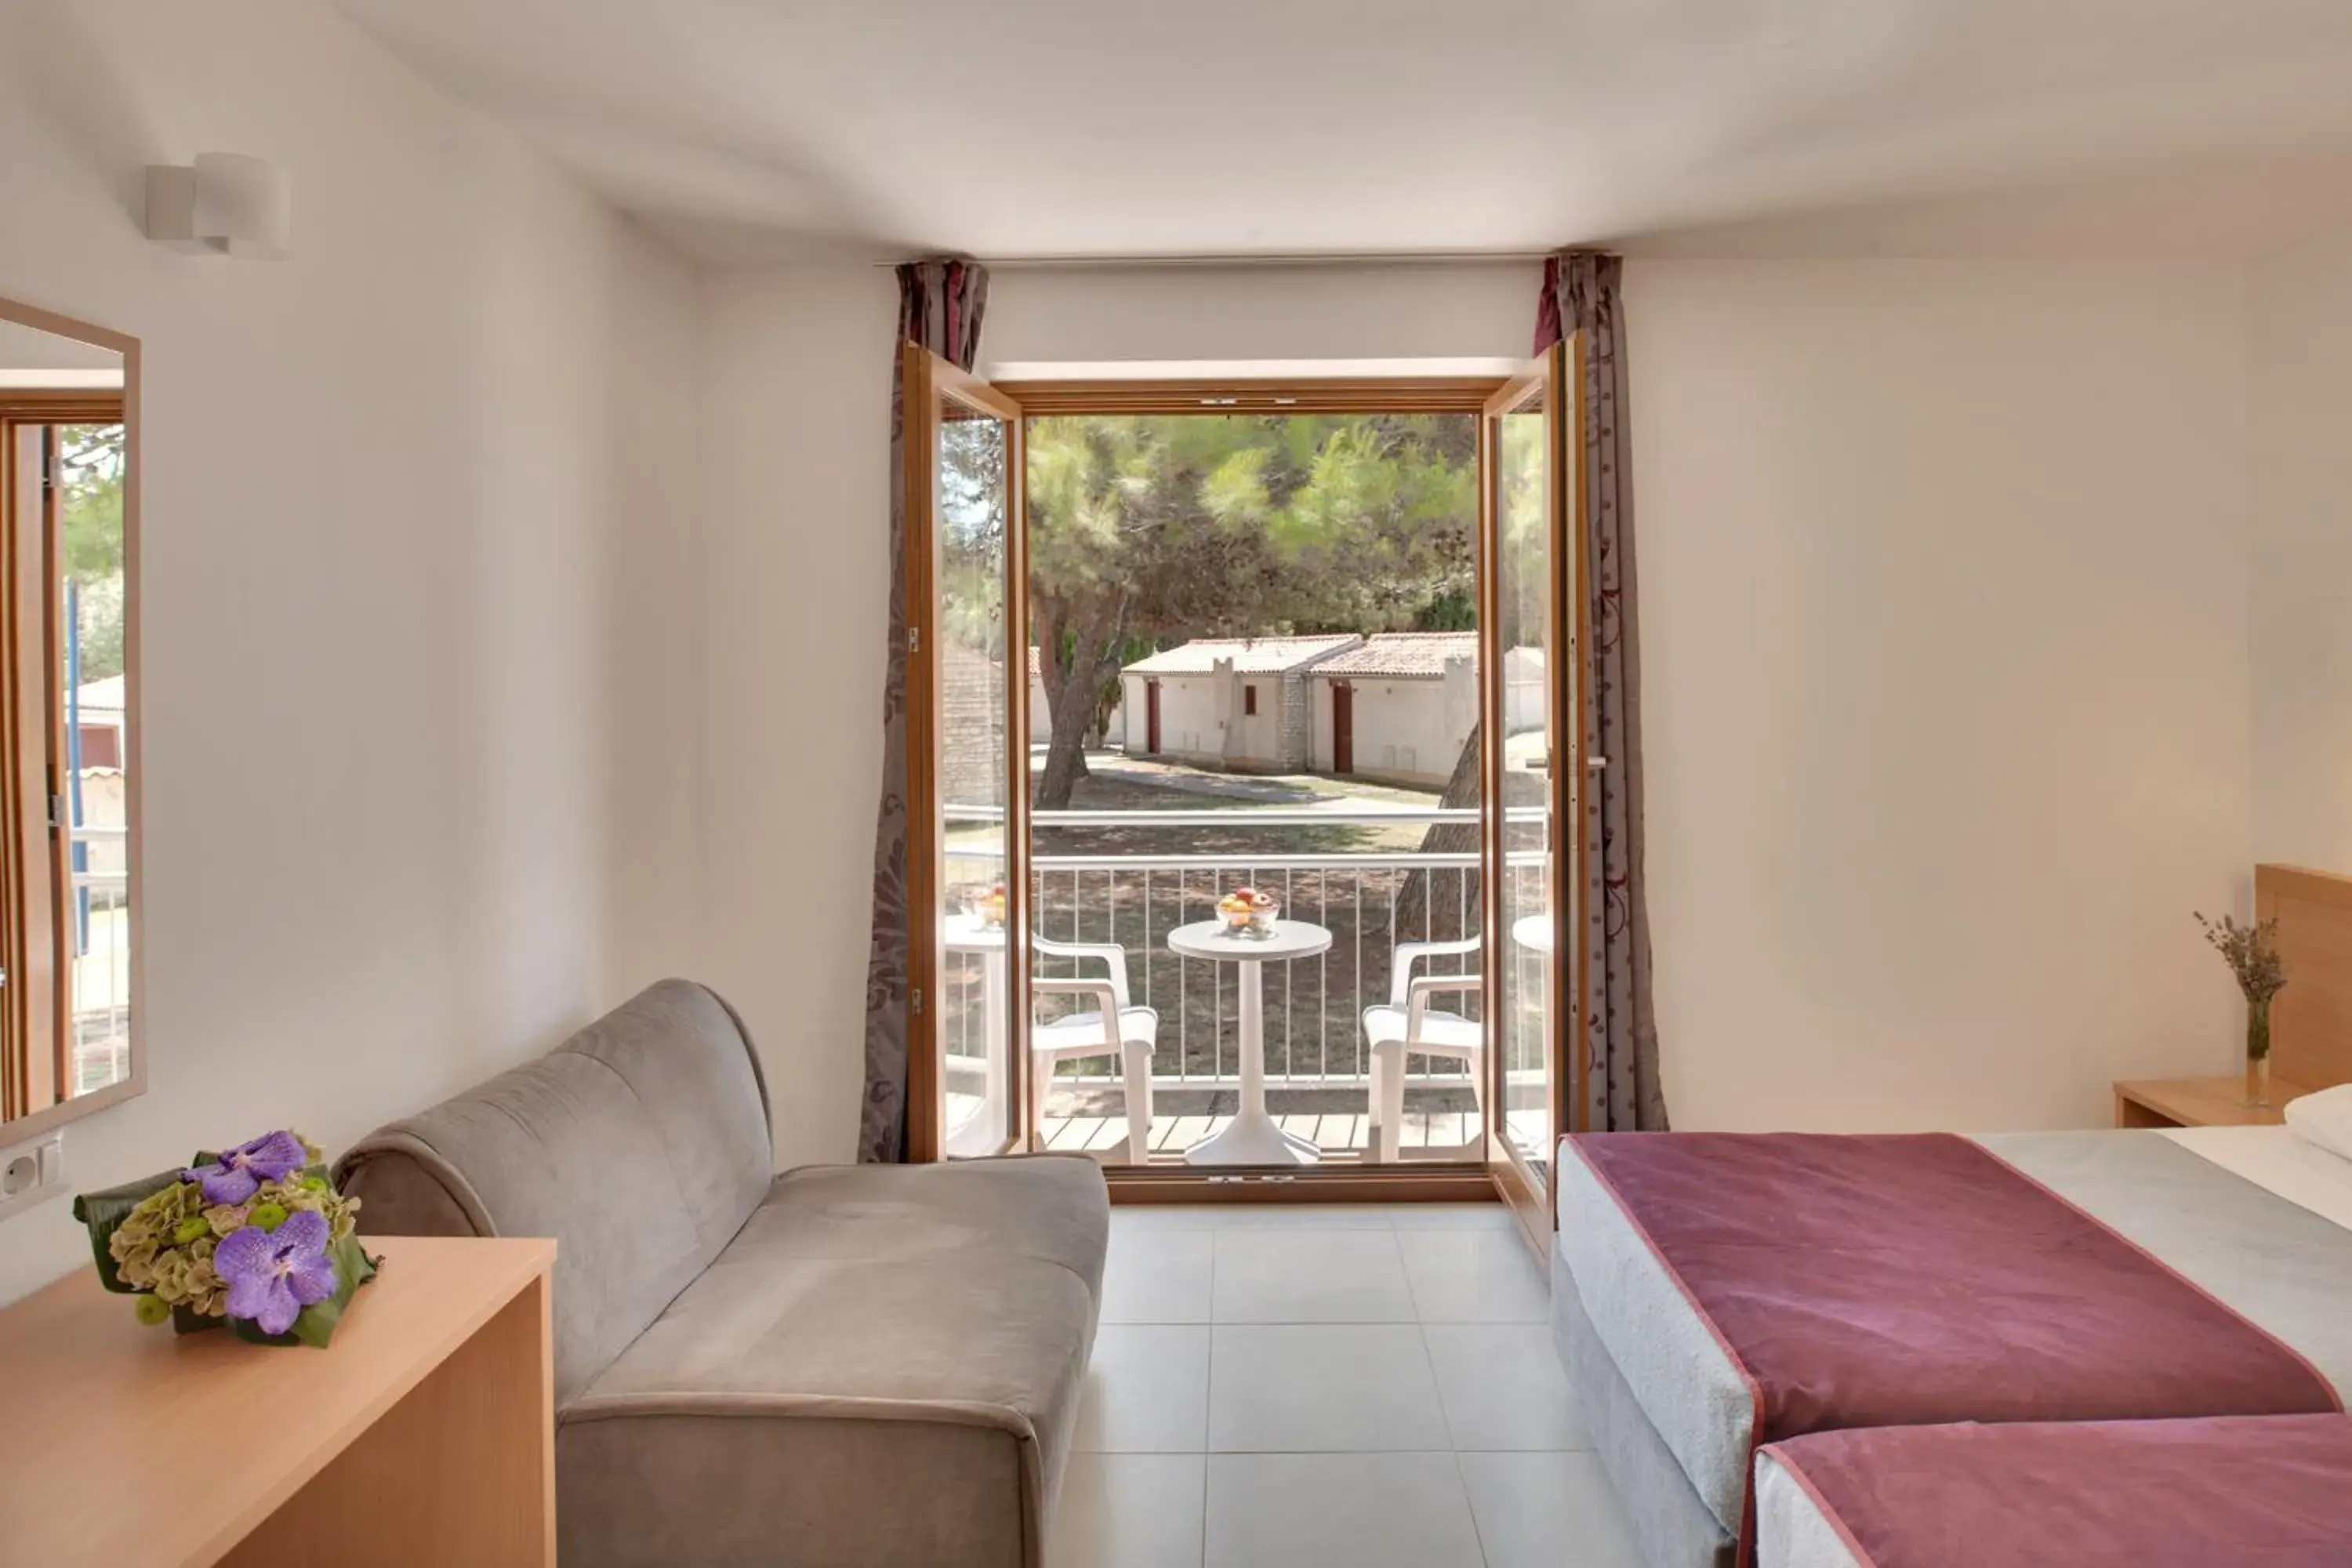 Balcony/Terrace, Seating Area in Villas Rubin Resort